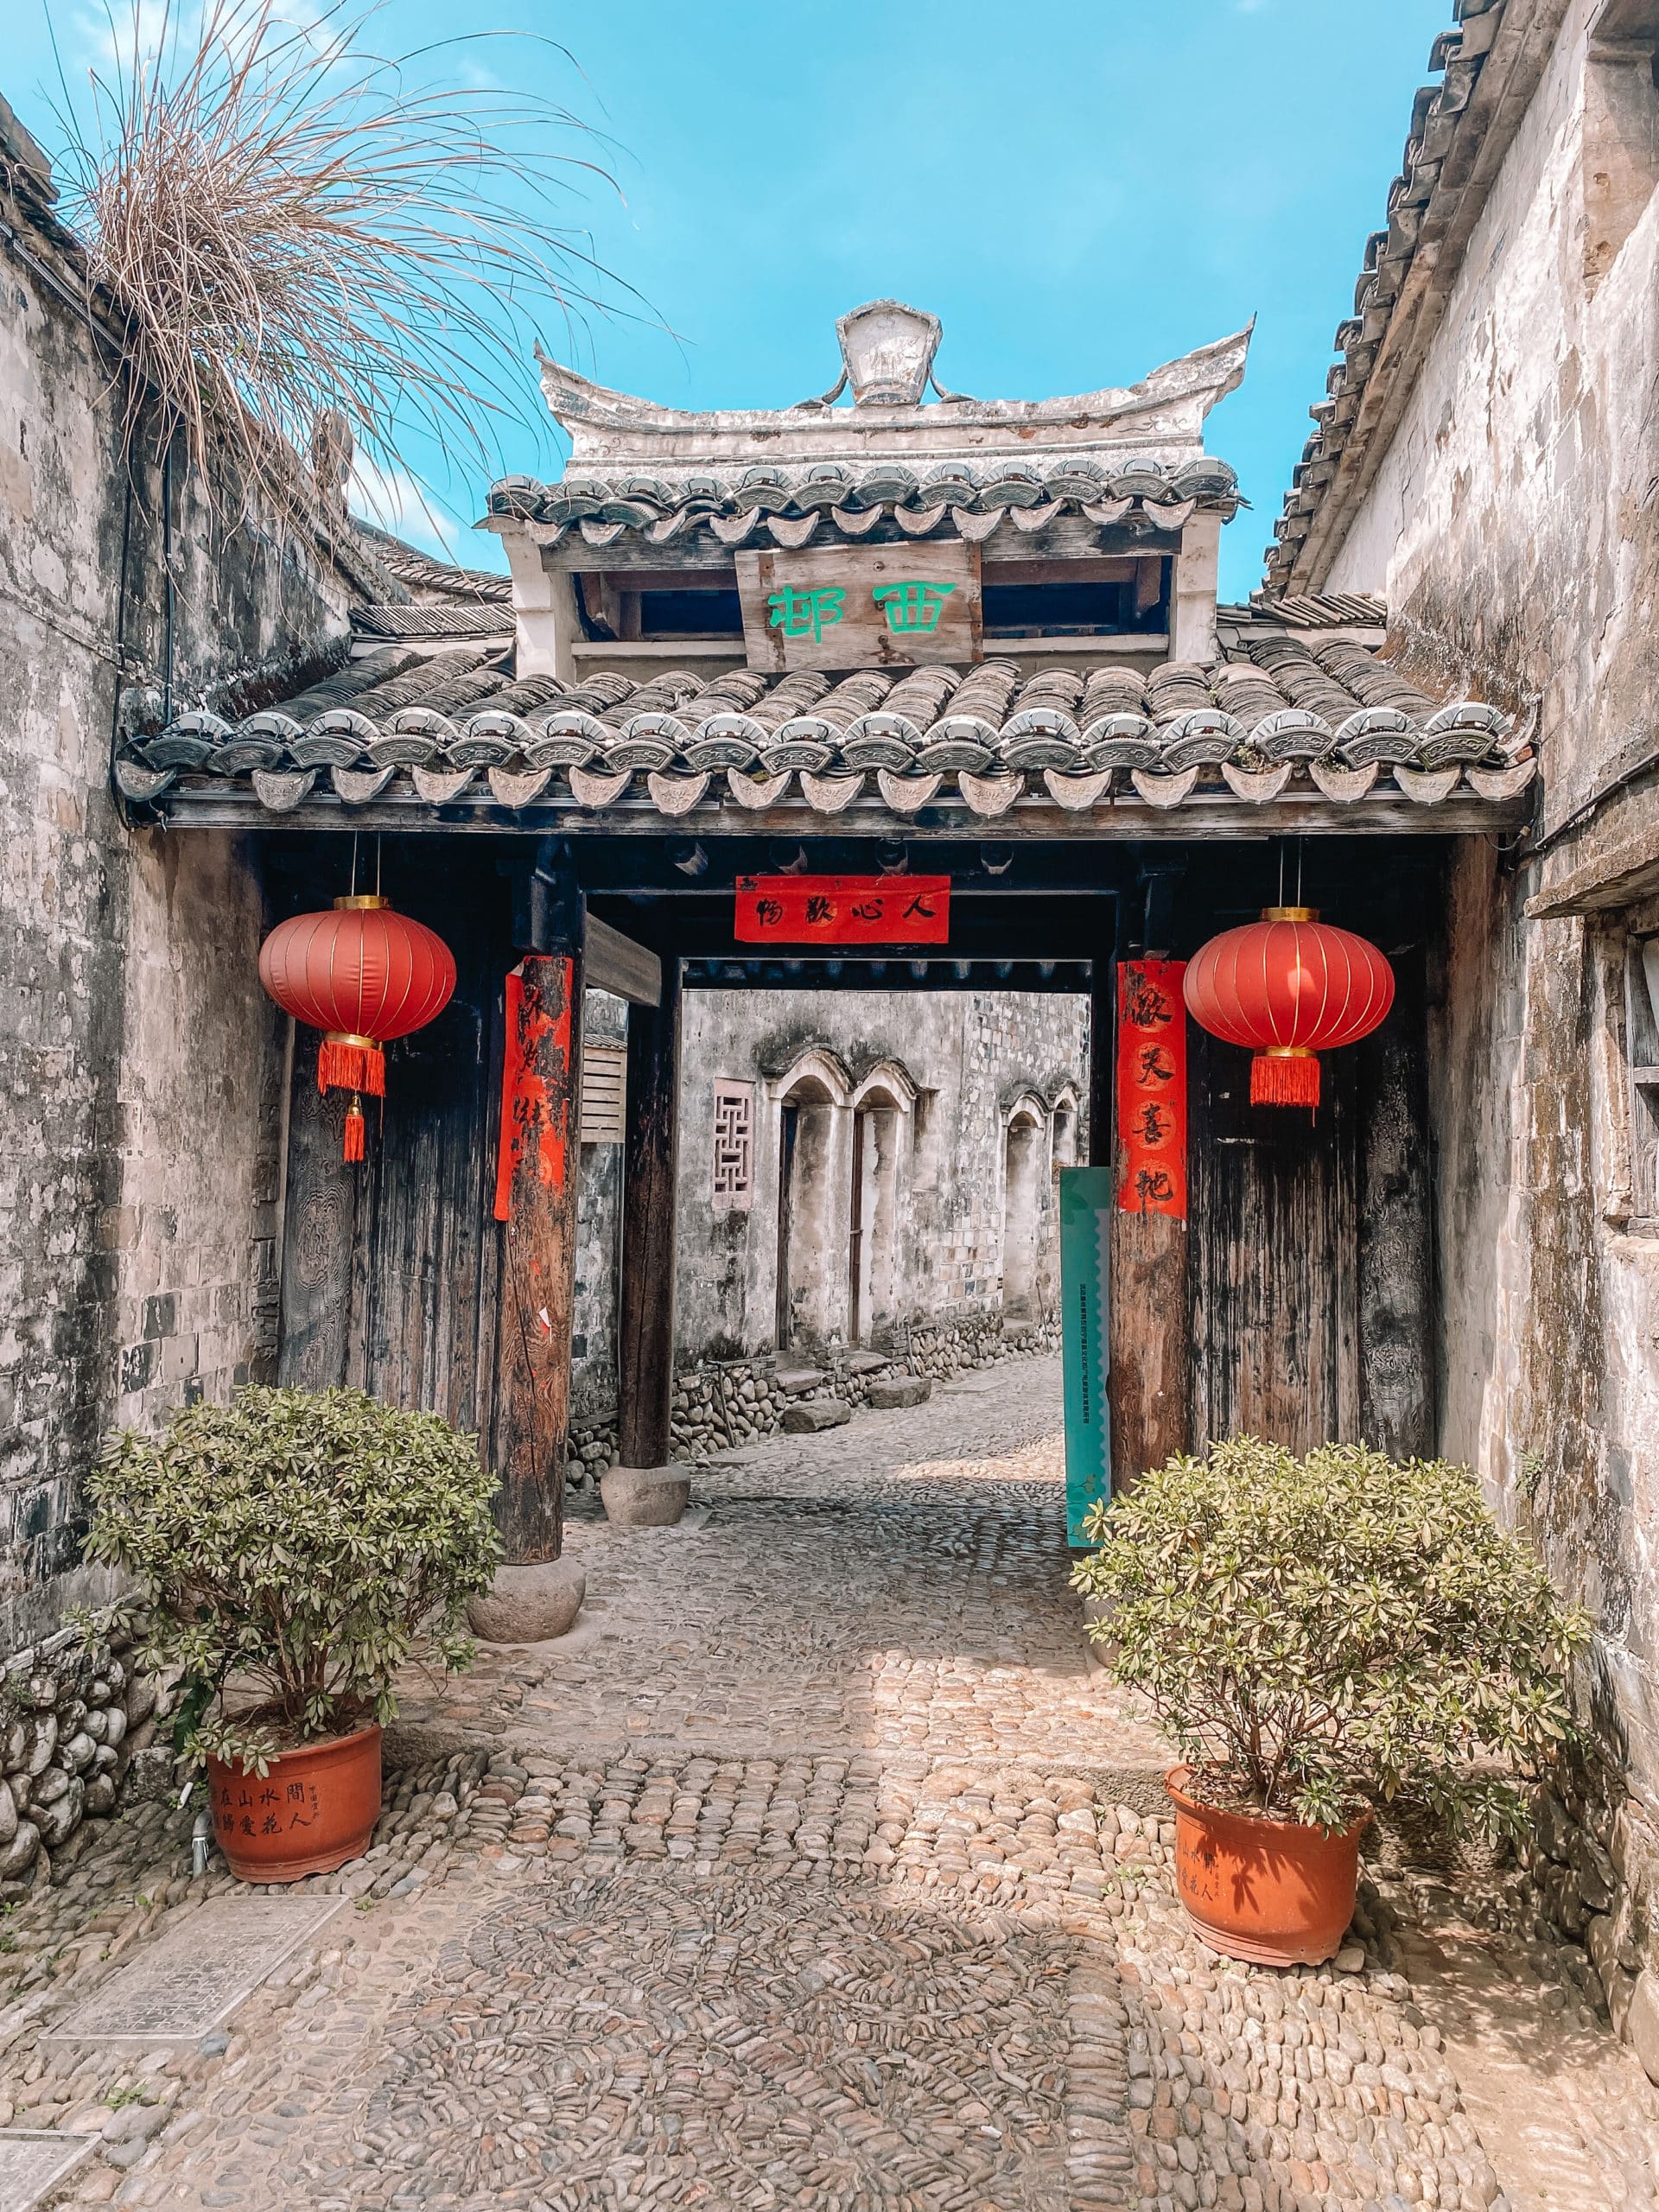 Qiantong Ancient Town – Ningbo’s Hidden Village